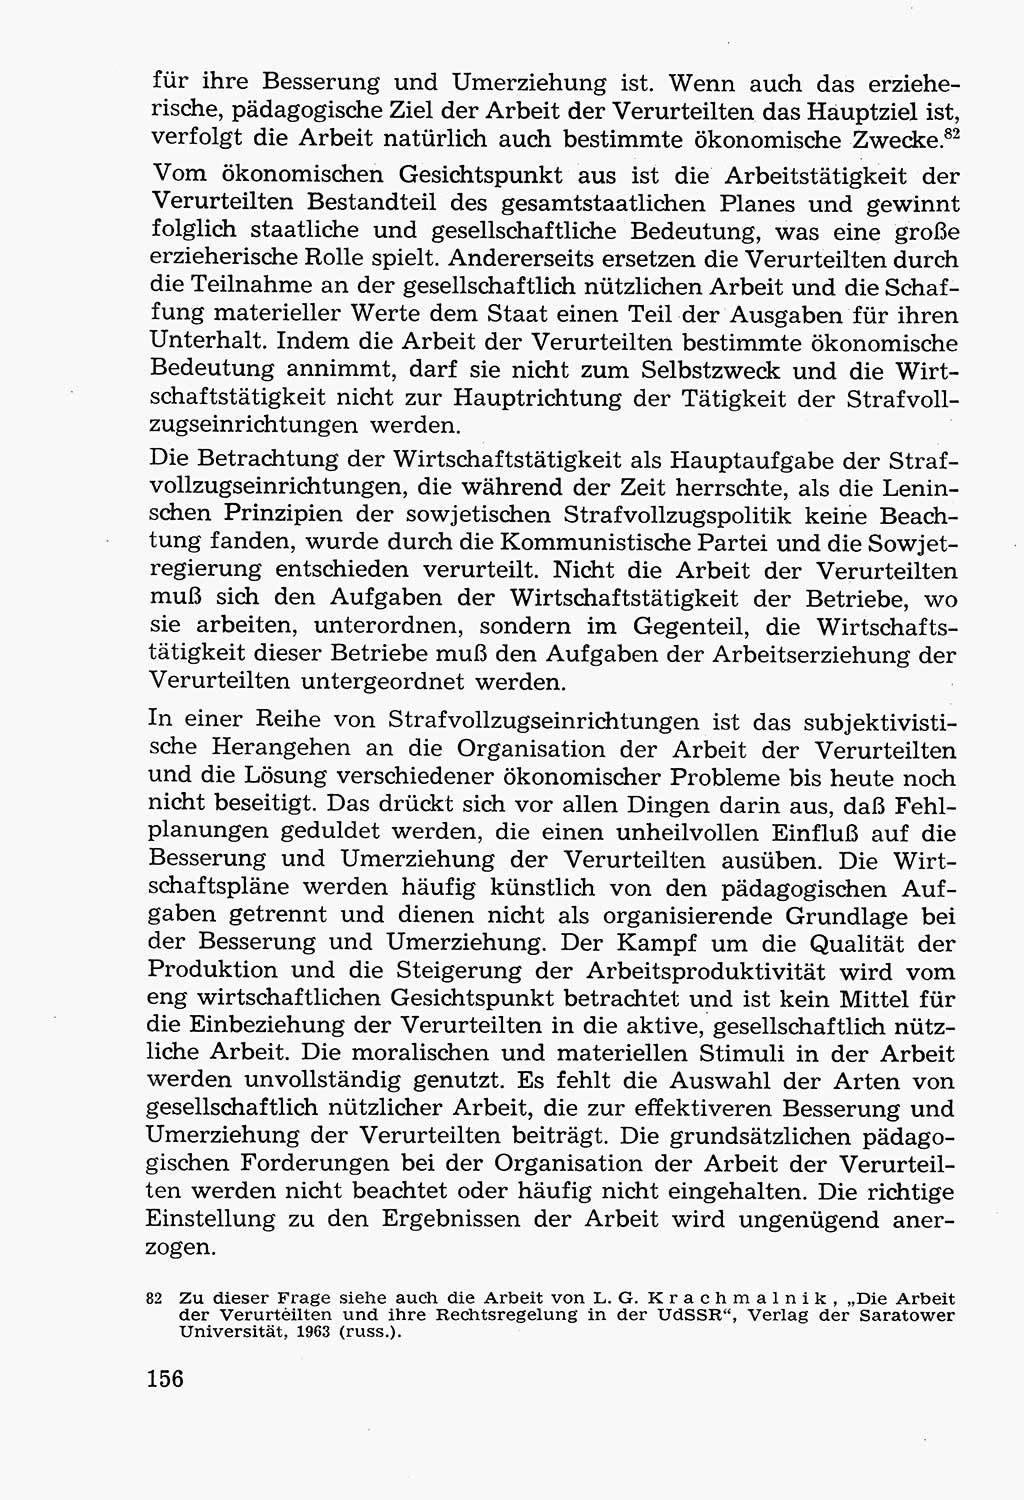 Lehrbuch der Strafvollzugspädagogik [Deutsche Demokratische Republik (DDR)] 1969, Seite 156 (Lb. SV-Pd. DDR 1969, S. 156)